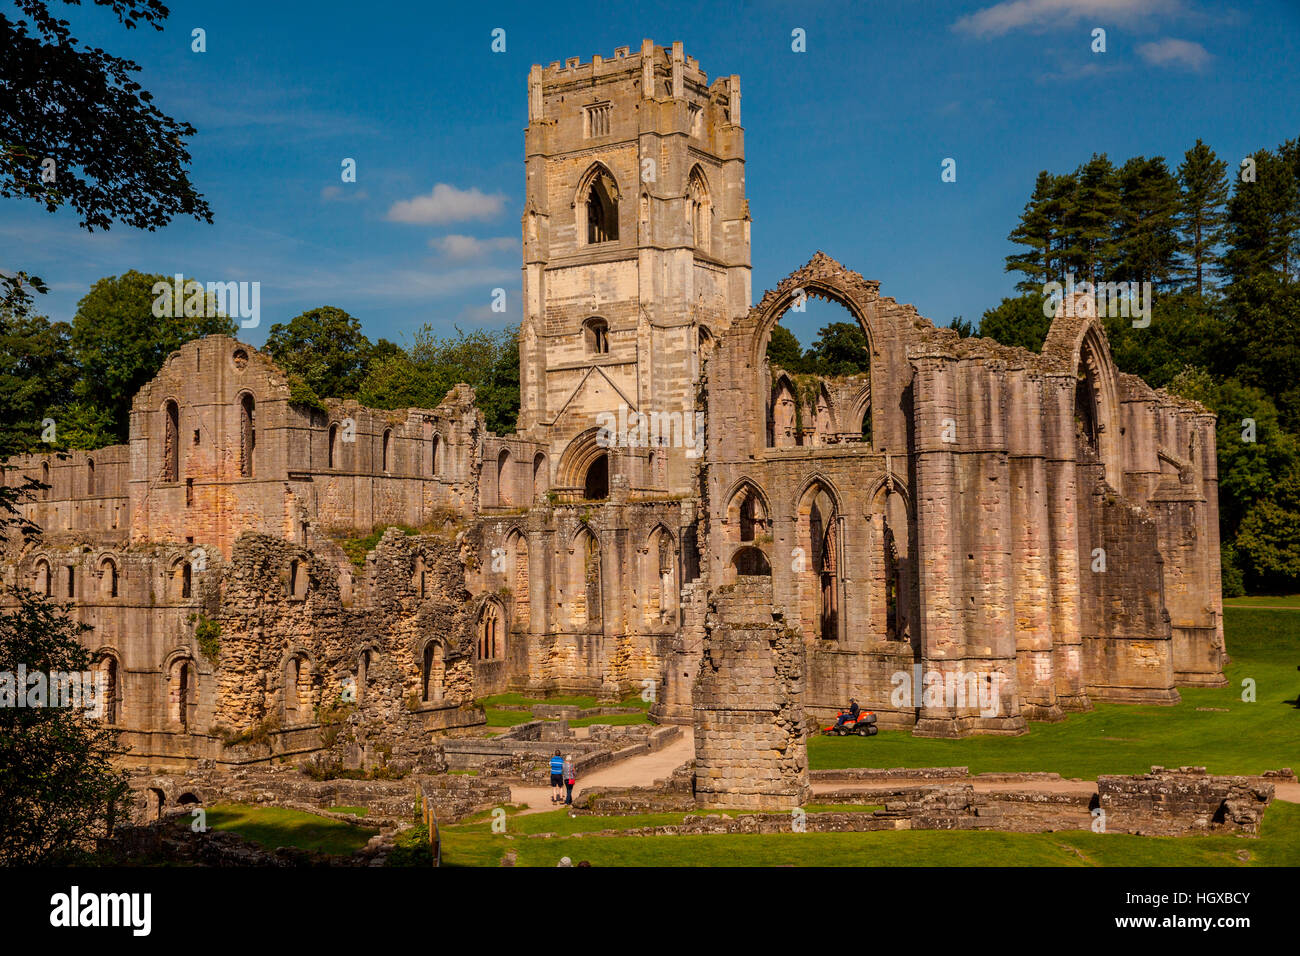 La Abadía de Fountains Abbey, sitio del Patrimonio Mundial de la UNESCO, de Yorkshire, Reino Unido Foto de stock